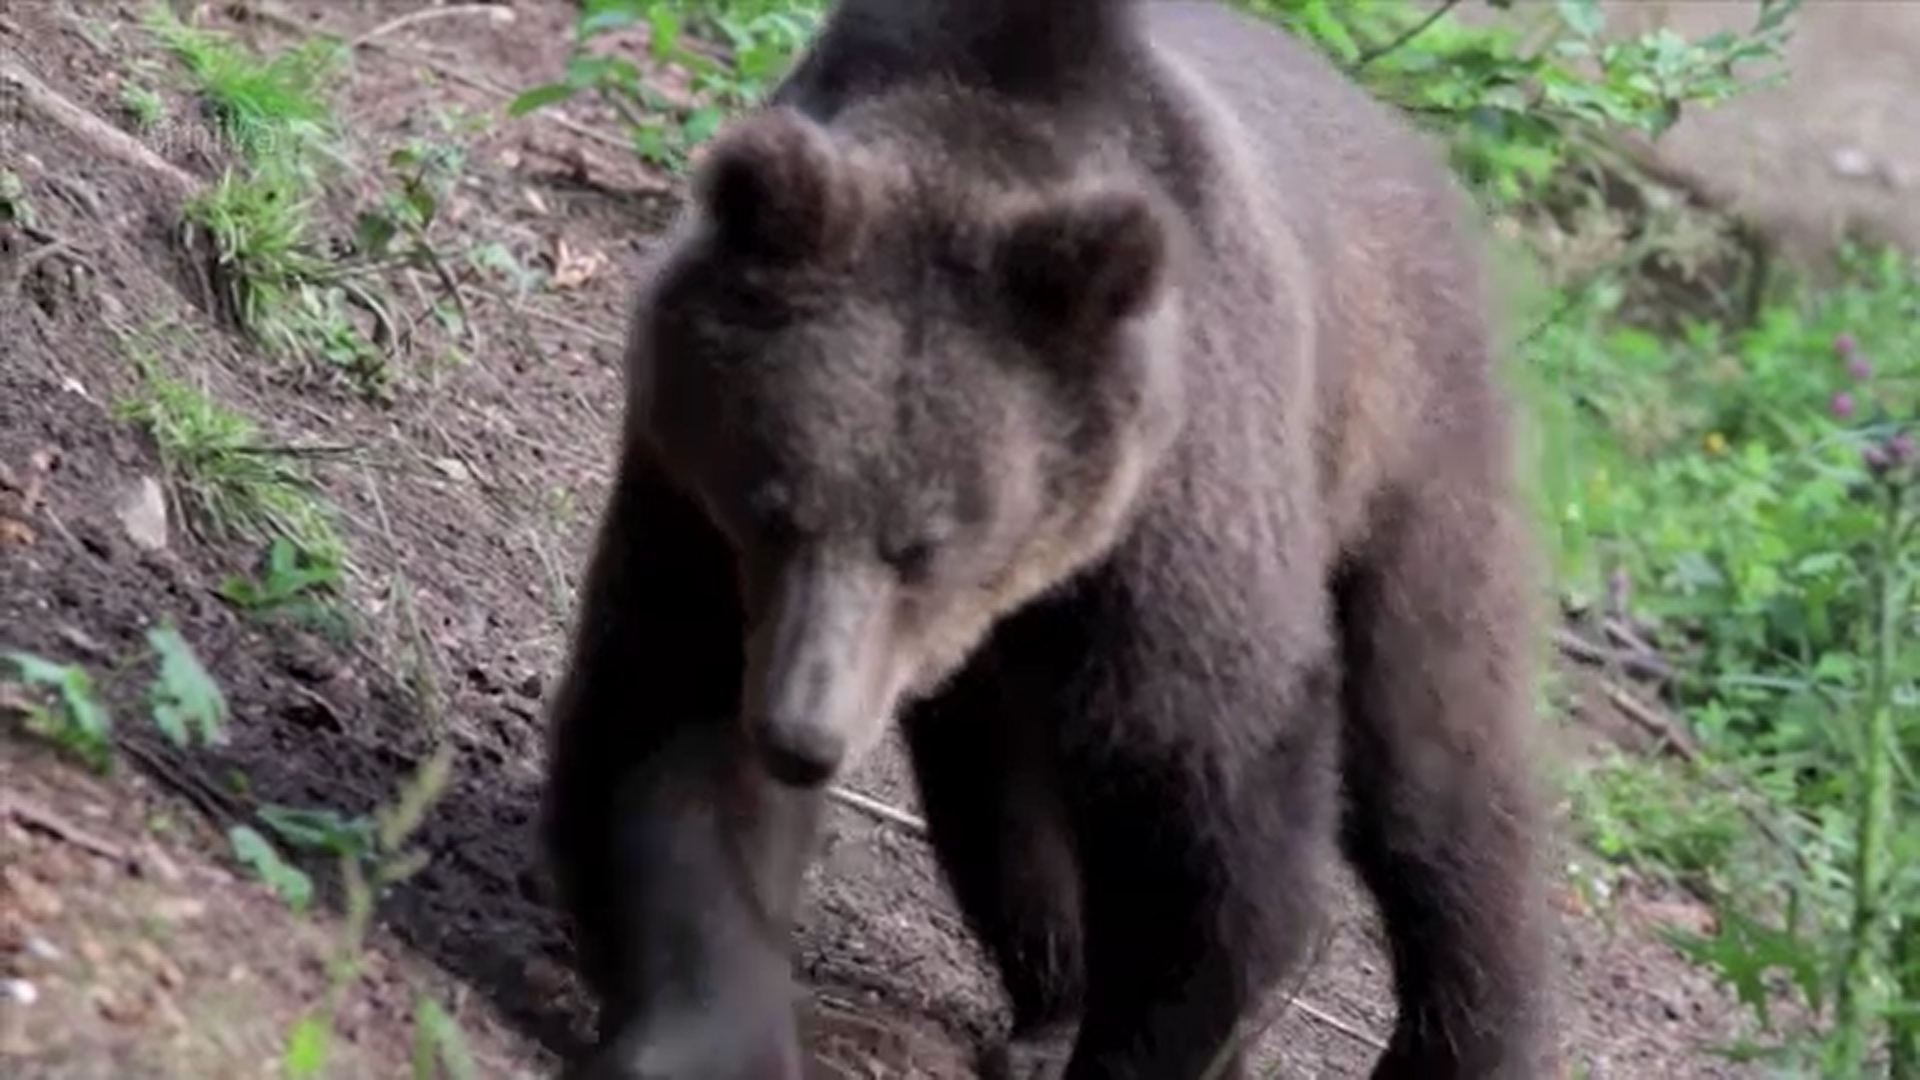 Un urs a fost văzut in pădurea Scroviștea din județul Ilfov. Animalul ar putea deveni periculos